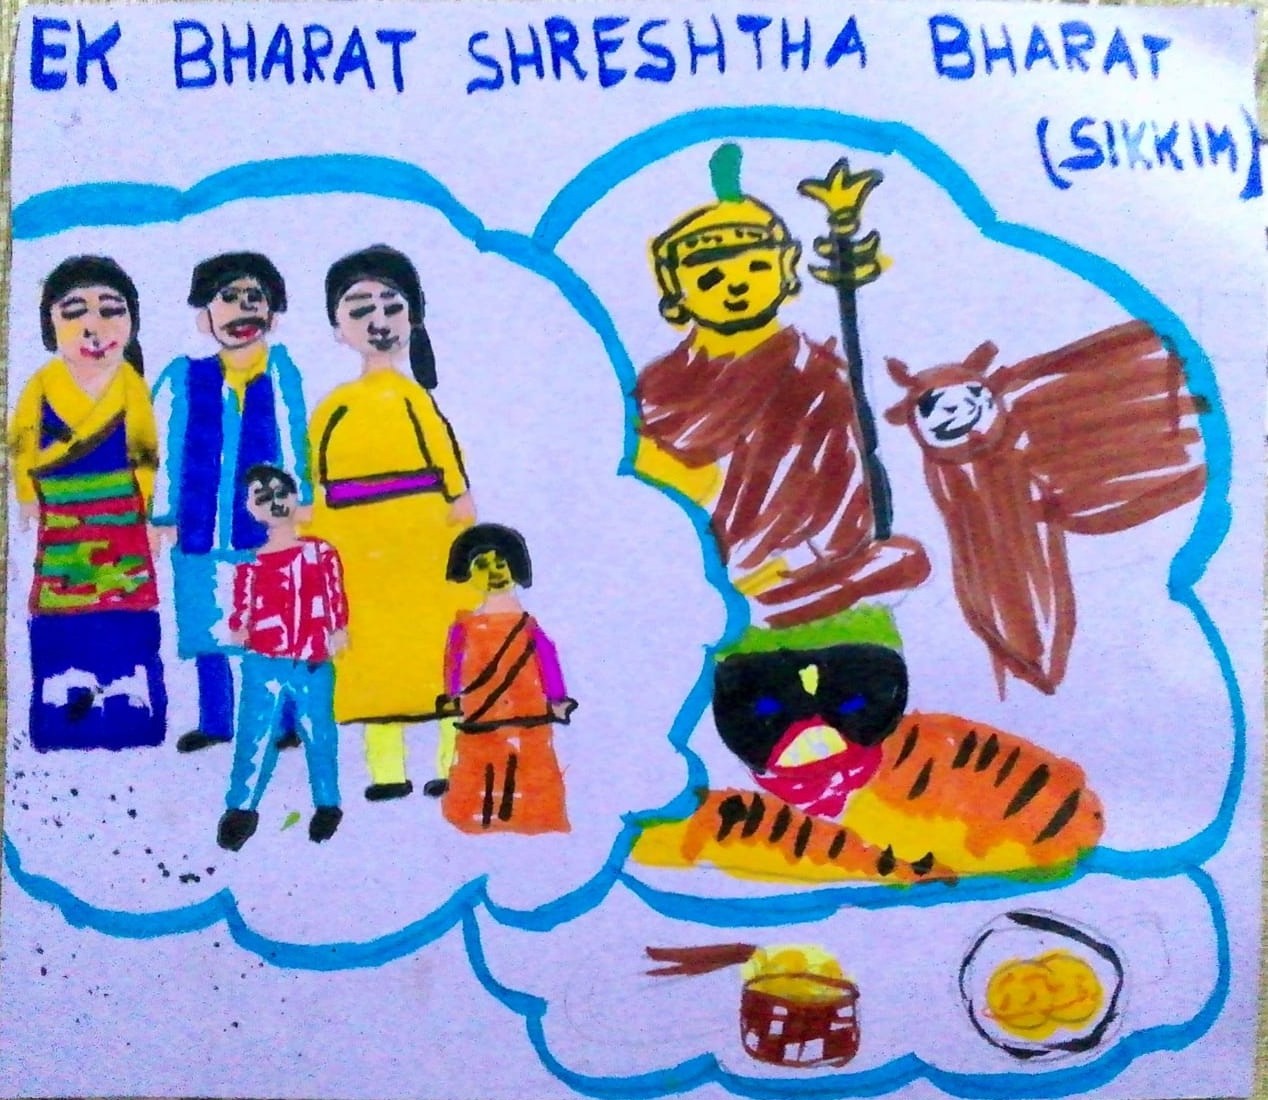 To foster the spirit of Ek... - Ek Bharat Shreshtha Bharat | Facebook-saigonsouth.com.vn